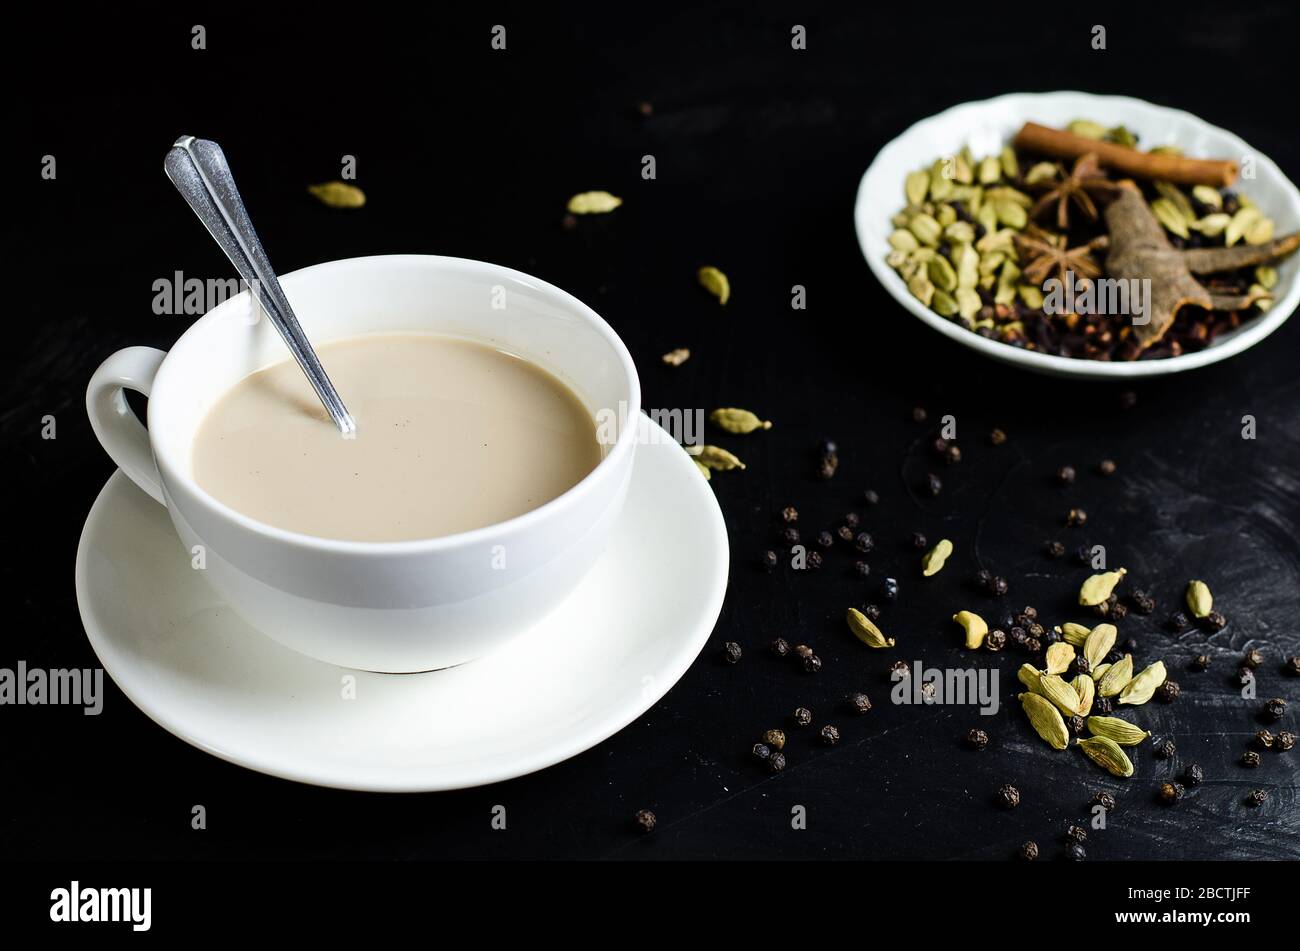 Indischer Masala Chai Tee, gewürzter Tee mit Milch Stockfotografie - Alamy